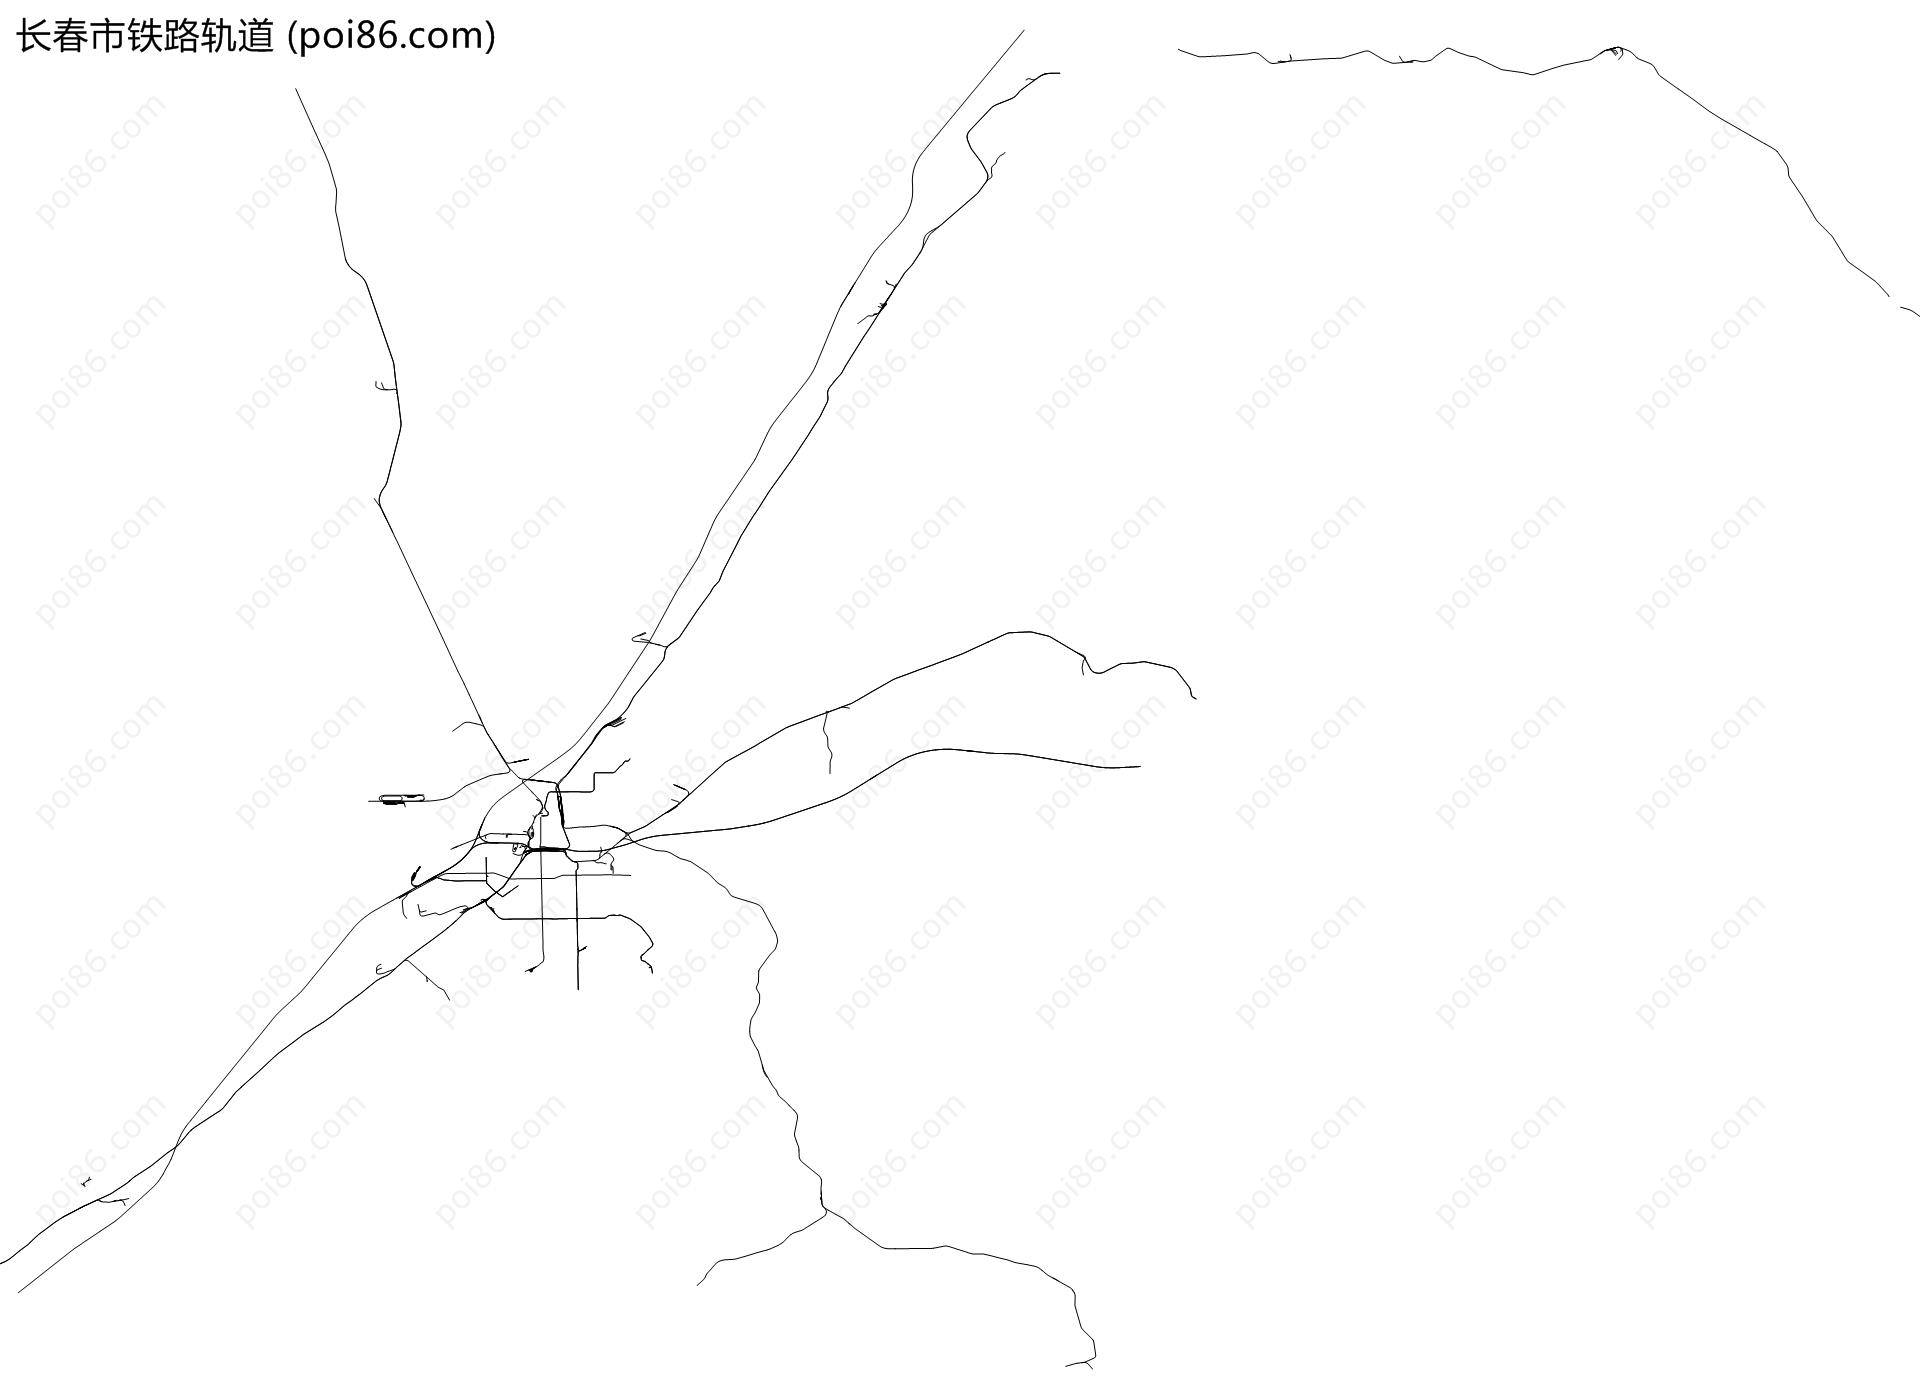 长春市铁路轨道地图